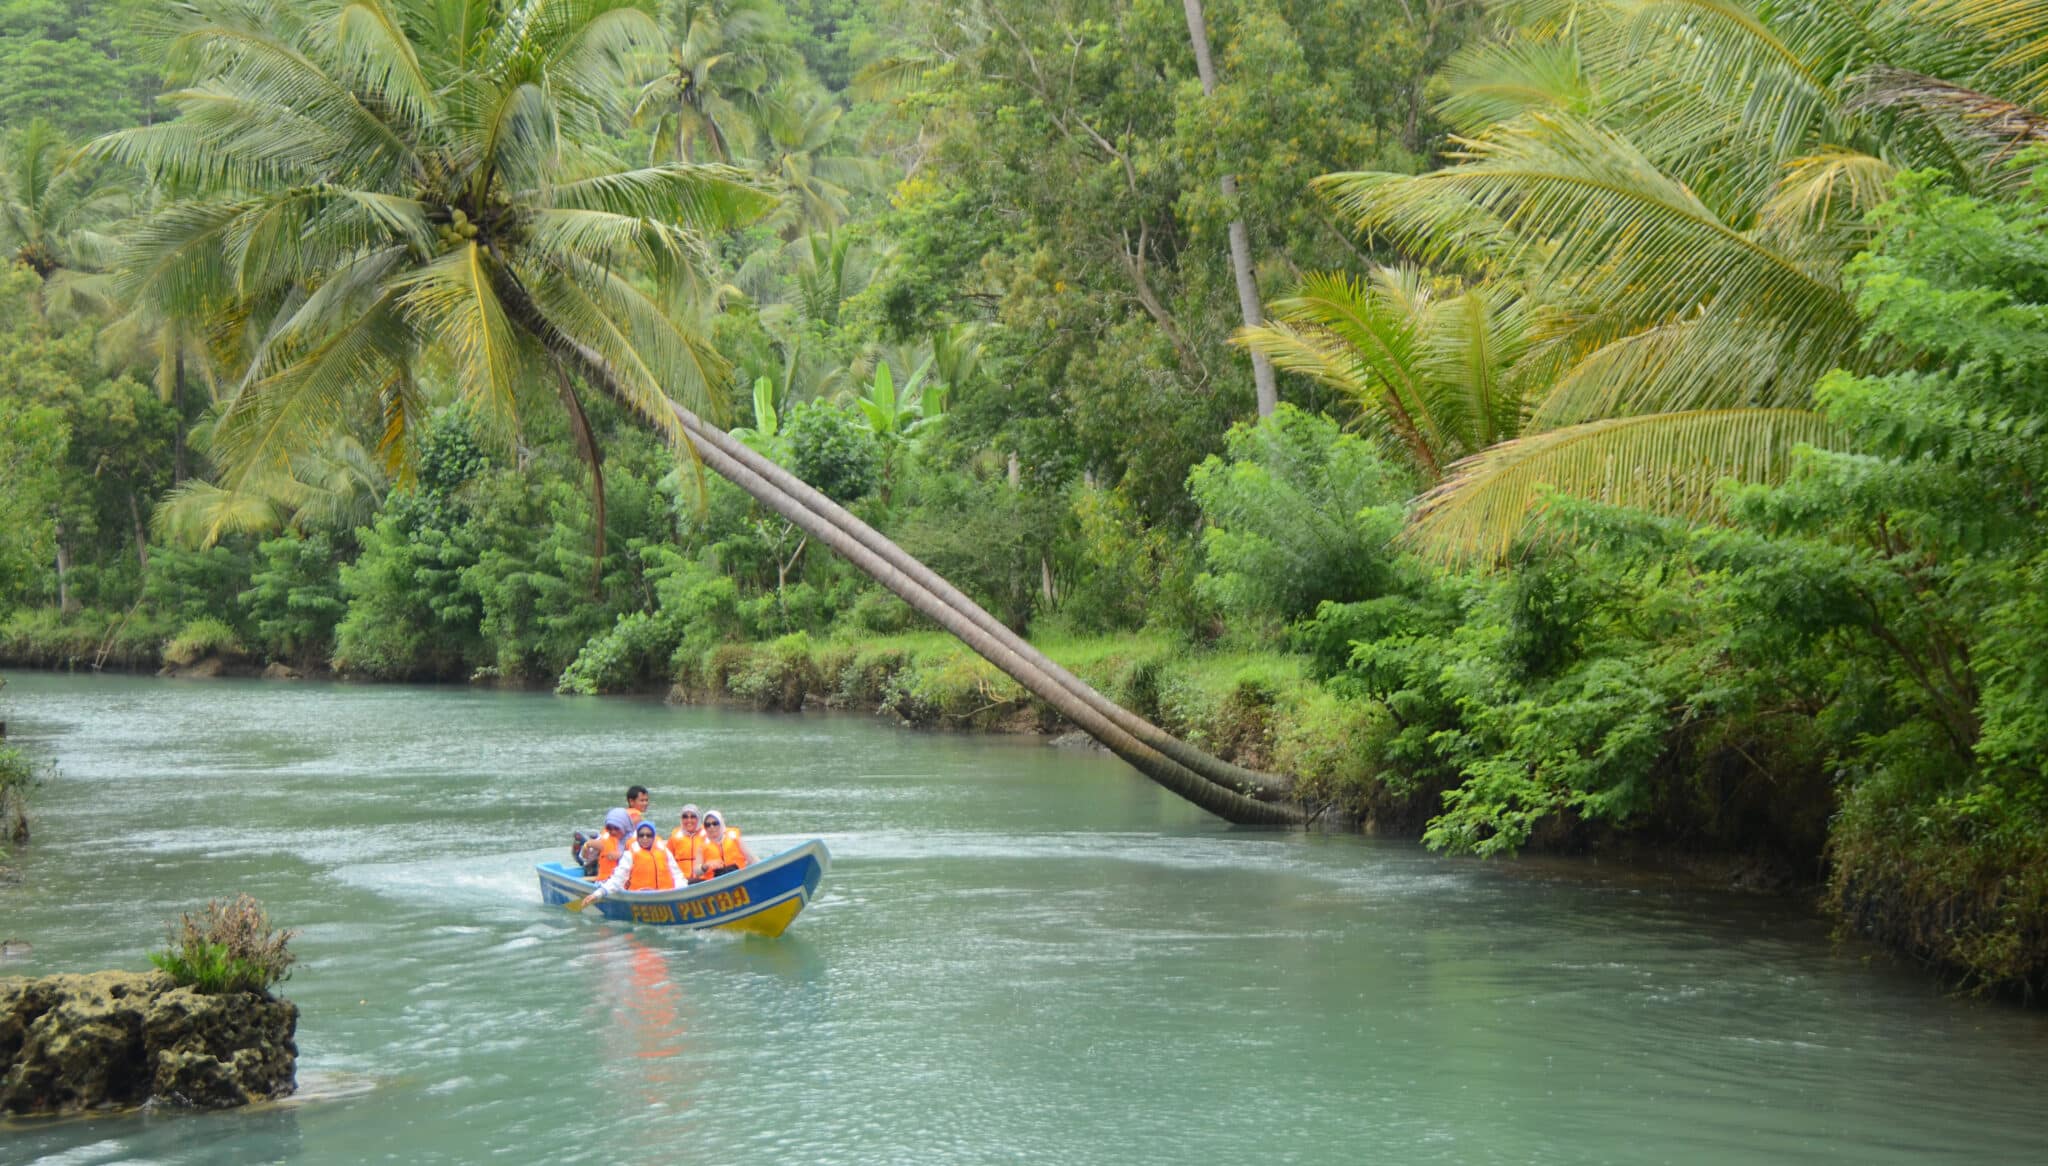 Wisata susur Sungai di Kali Cokel Pacitan dengan menggunakan perahu